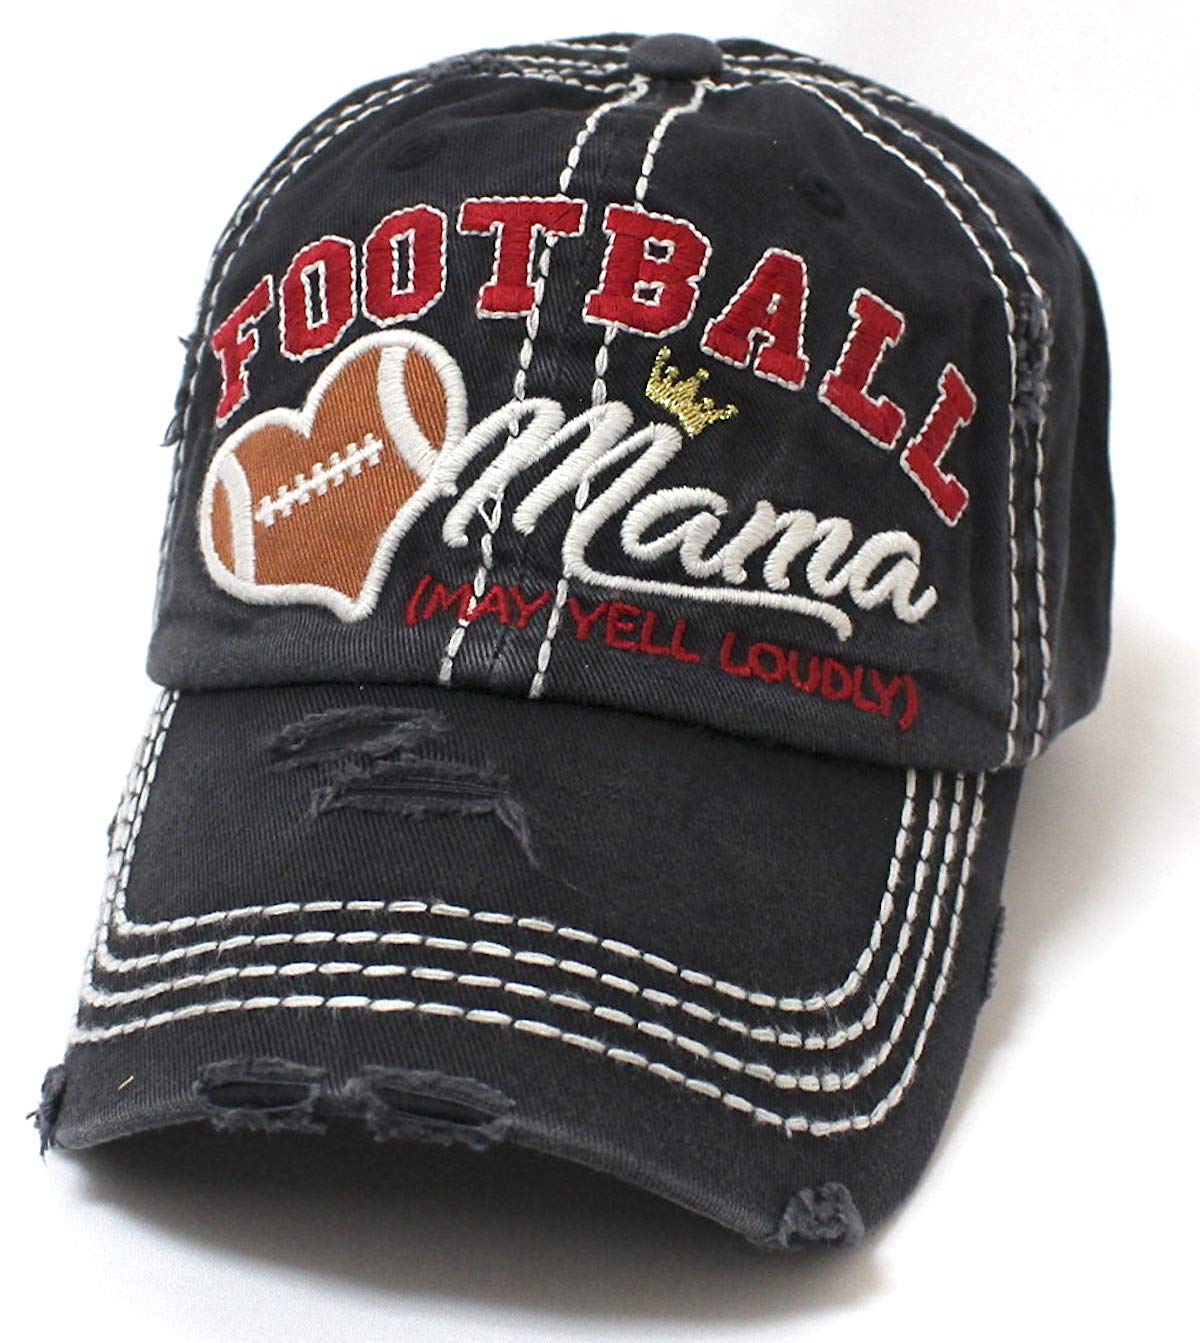 CAPS 'N VINTAGE Black Football Mama Cheer Queen Hat - Caps 'N Vintage 